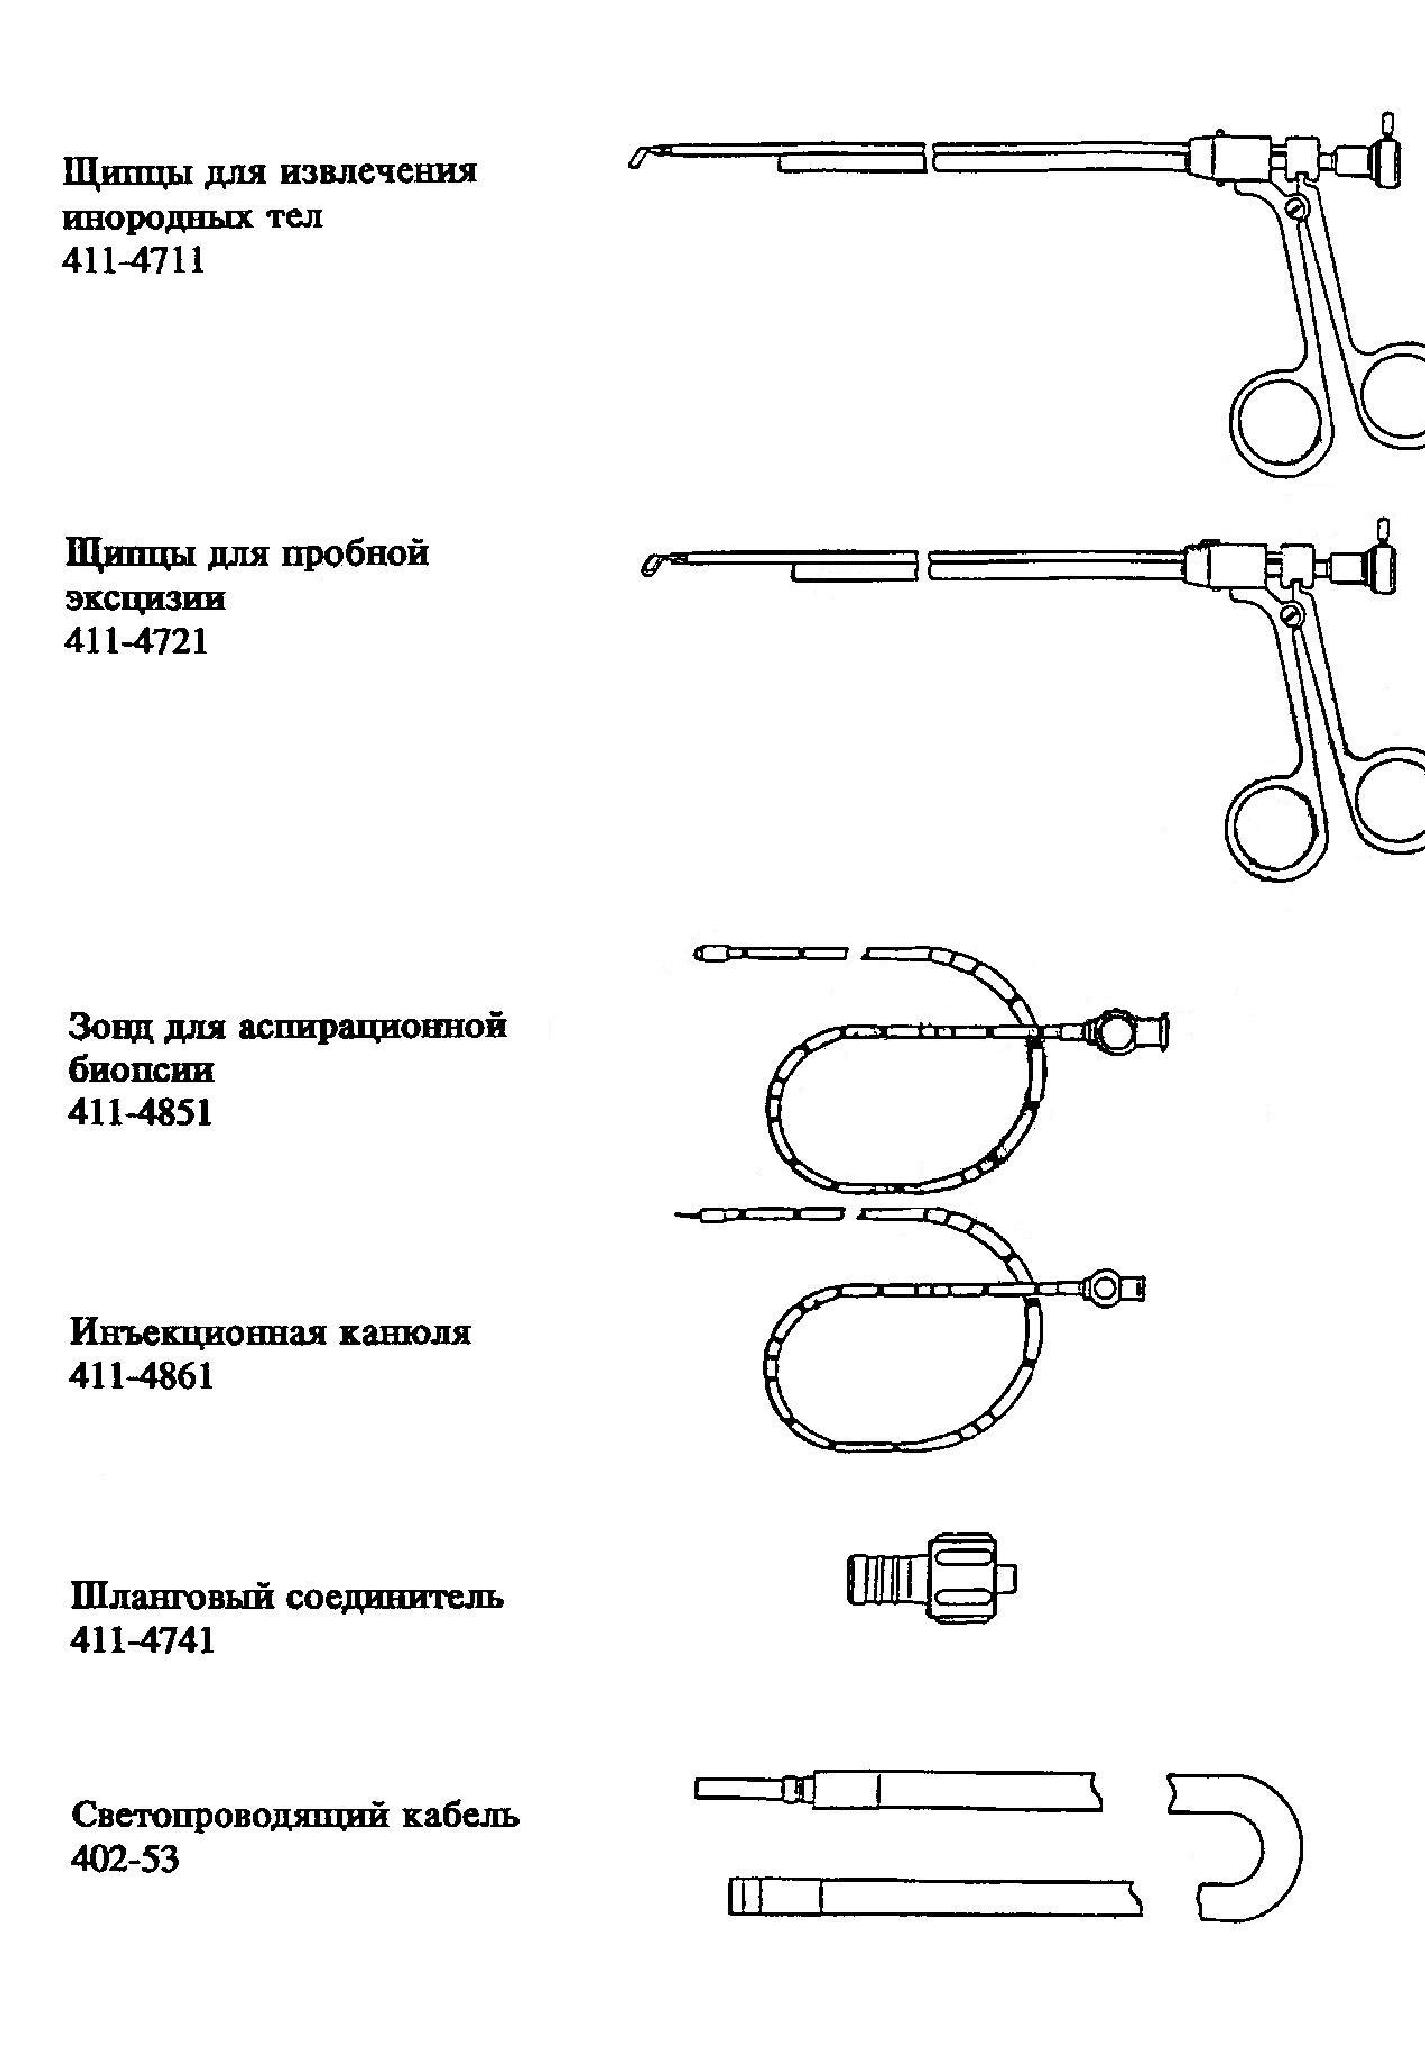 Цисто-уретроскоп - комплект поставки